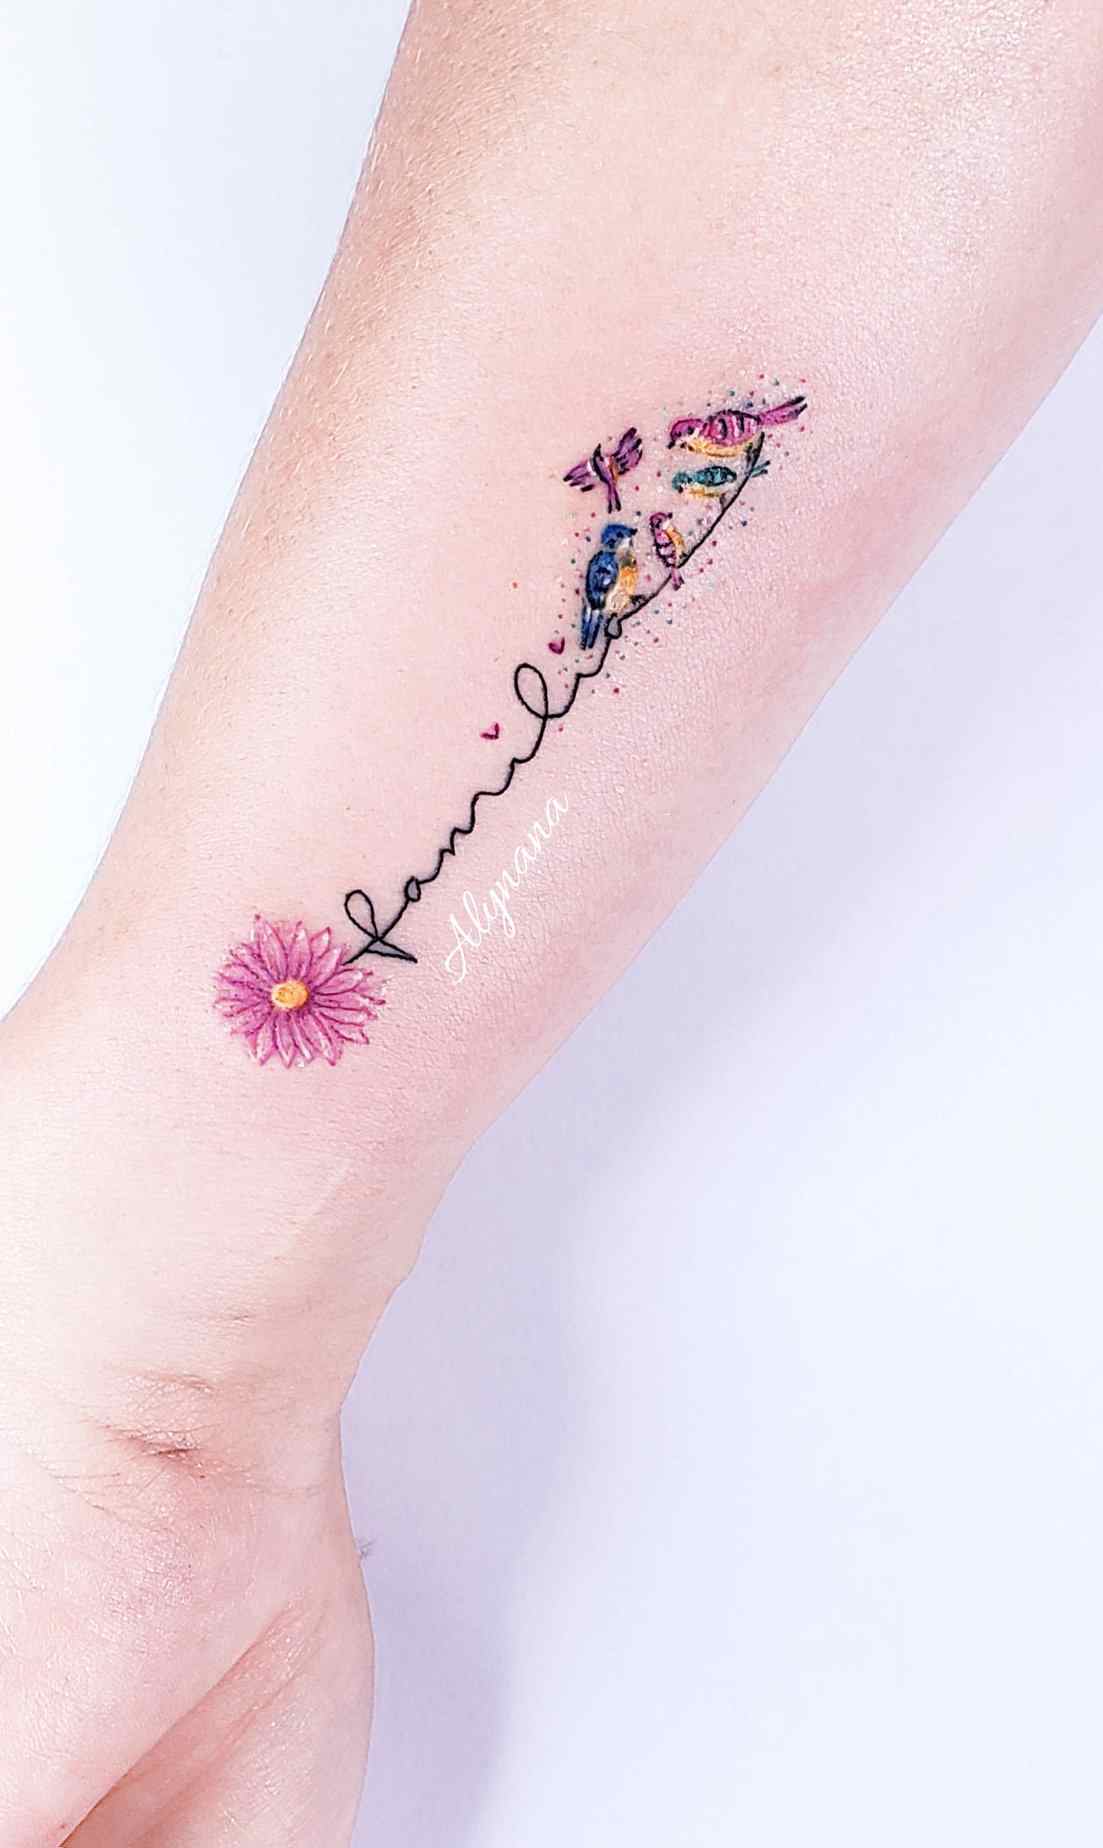 100 delicati tatuaggi colorati dell'artista Alynana Famiglia rappresentata con uccelli sull'avambraccio con fiori